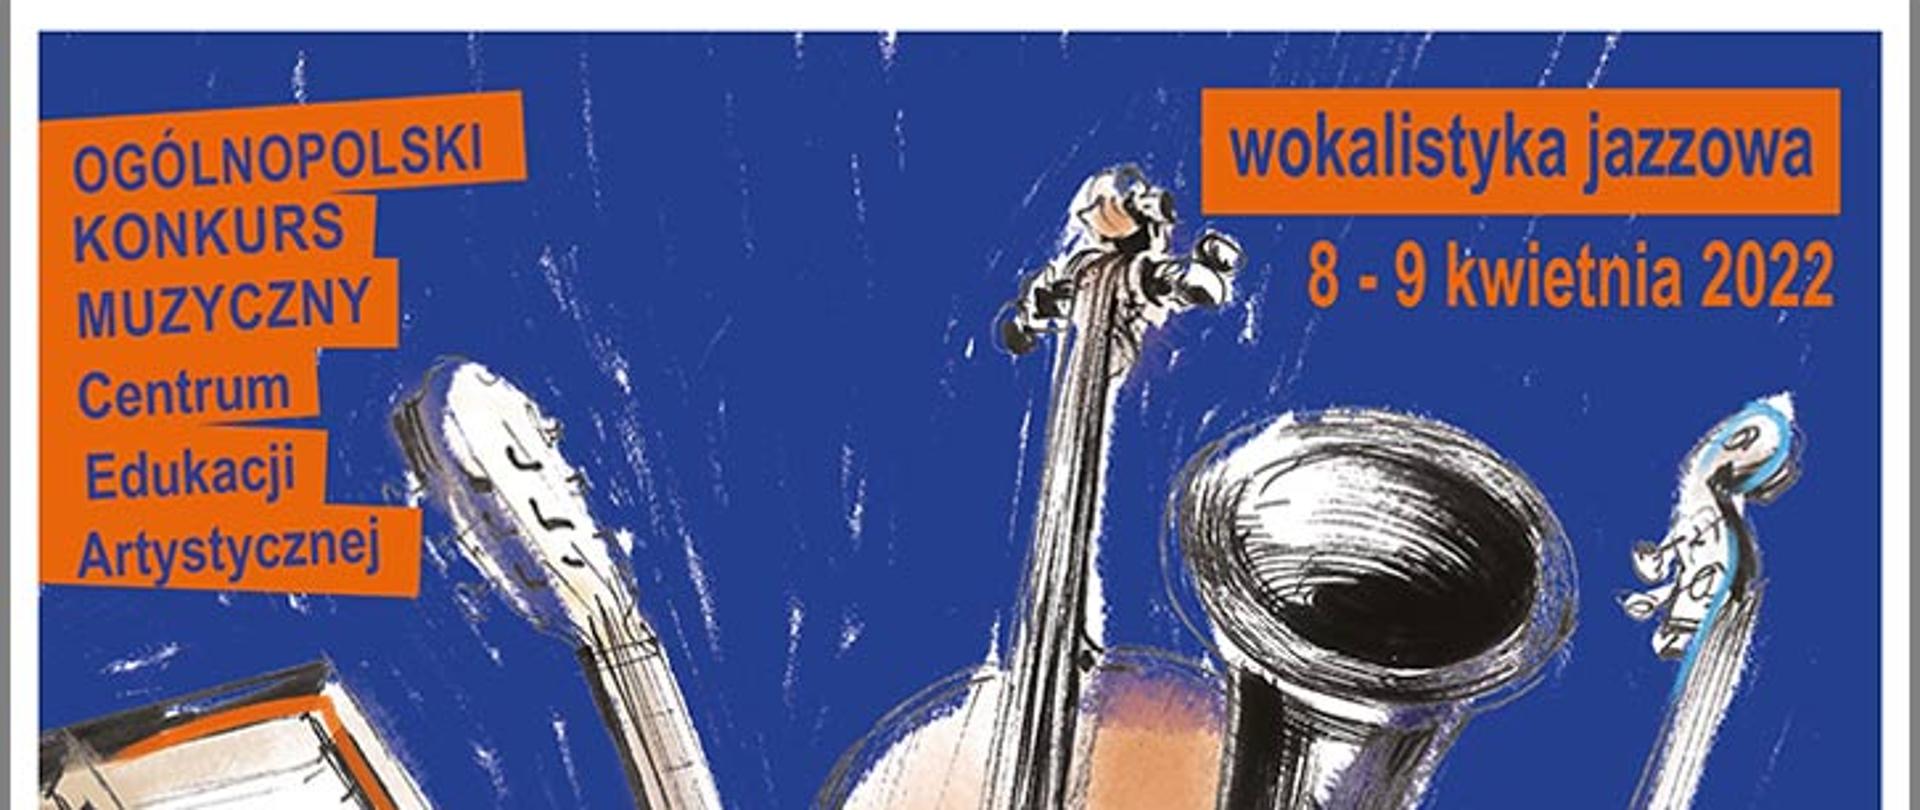 Afisz - z napisem Ogólnopolski Konkurs Muzyczny Centrum Edukacji Artystycznej w kategorii Wokalistyka Jazzowa, 8,9 kwietnia 2022, w tle różne instrumenty